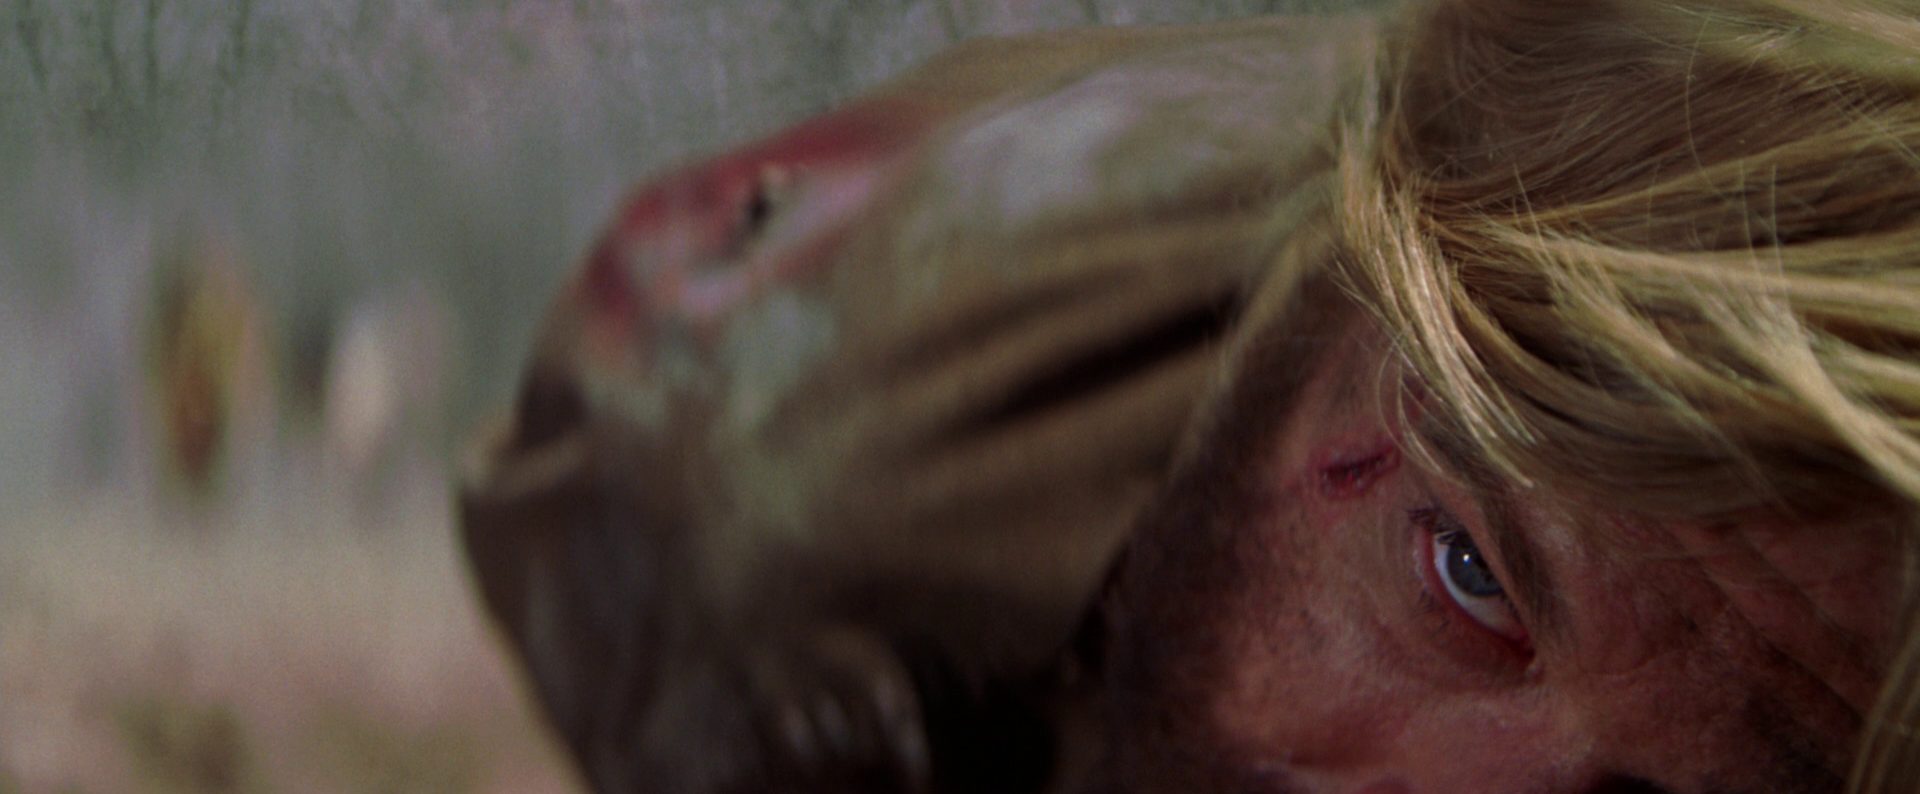 Extreme Nahaufnahme von Robert Redfords Gesicht; Johnson liegt am Boden und hat nebenm dem rechten Auge eine blutige Schramme.